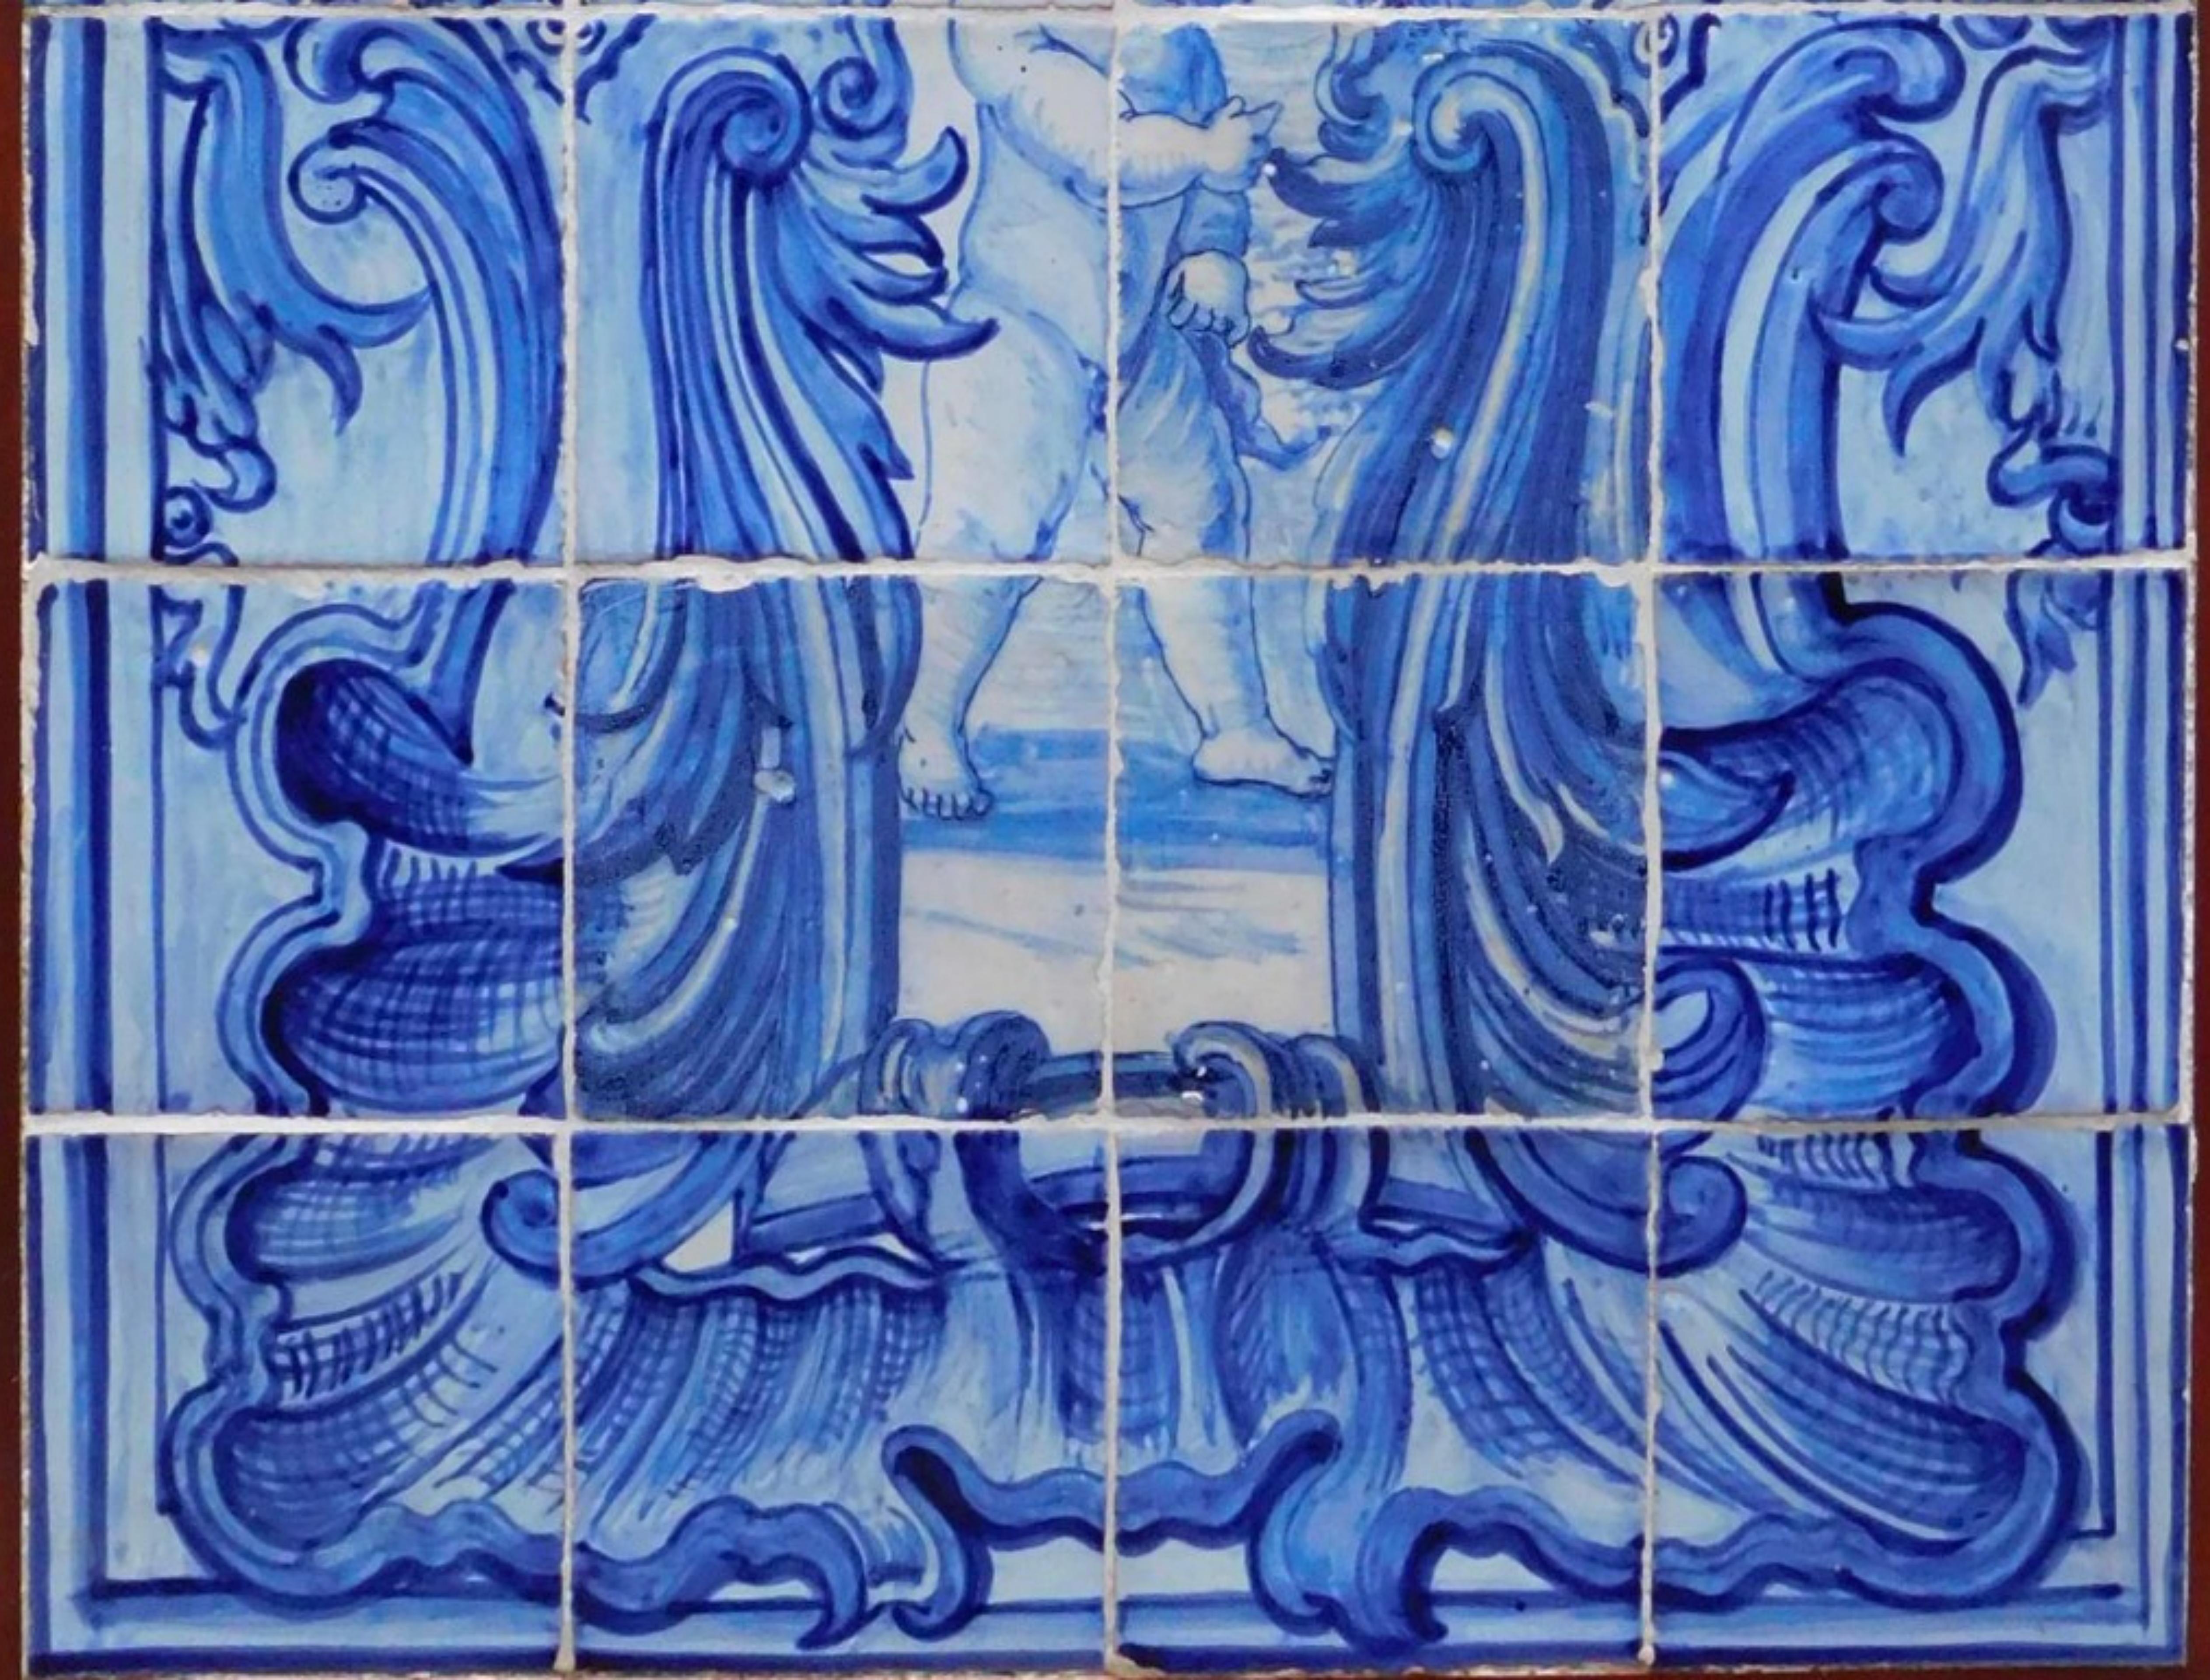 Panneau de carreaux portugais du 18e siècle « Angleterre »
84cm x 56cm
24 carreaux
bonnes conditions